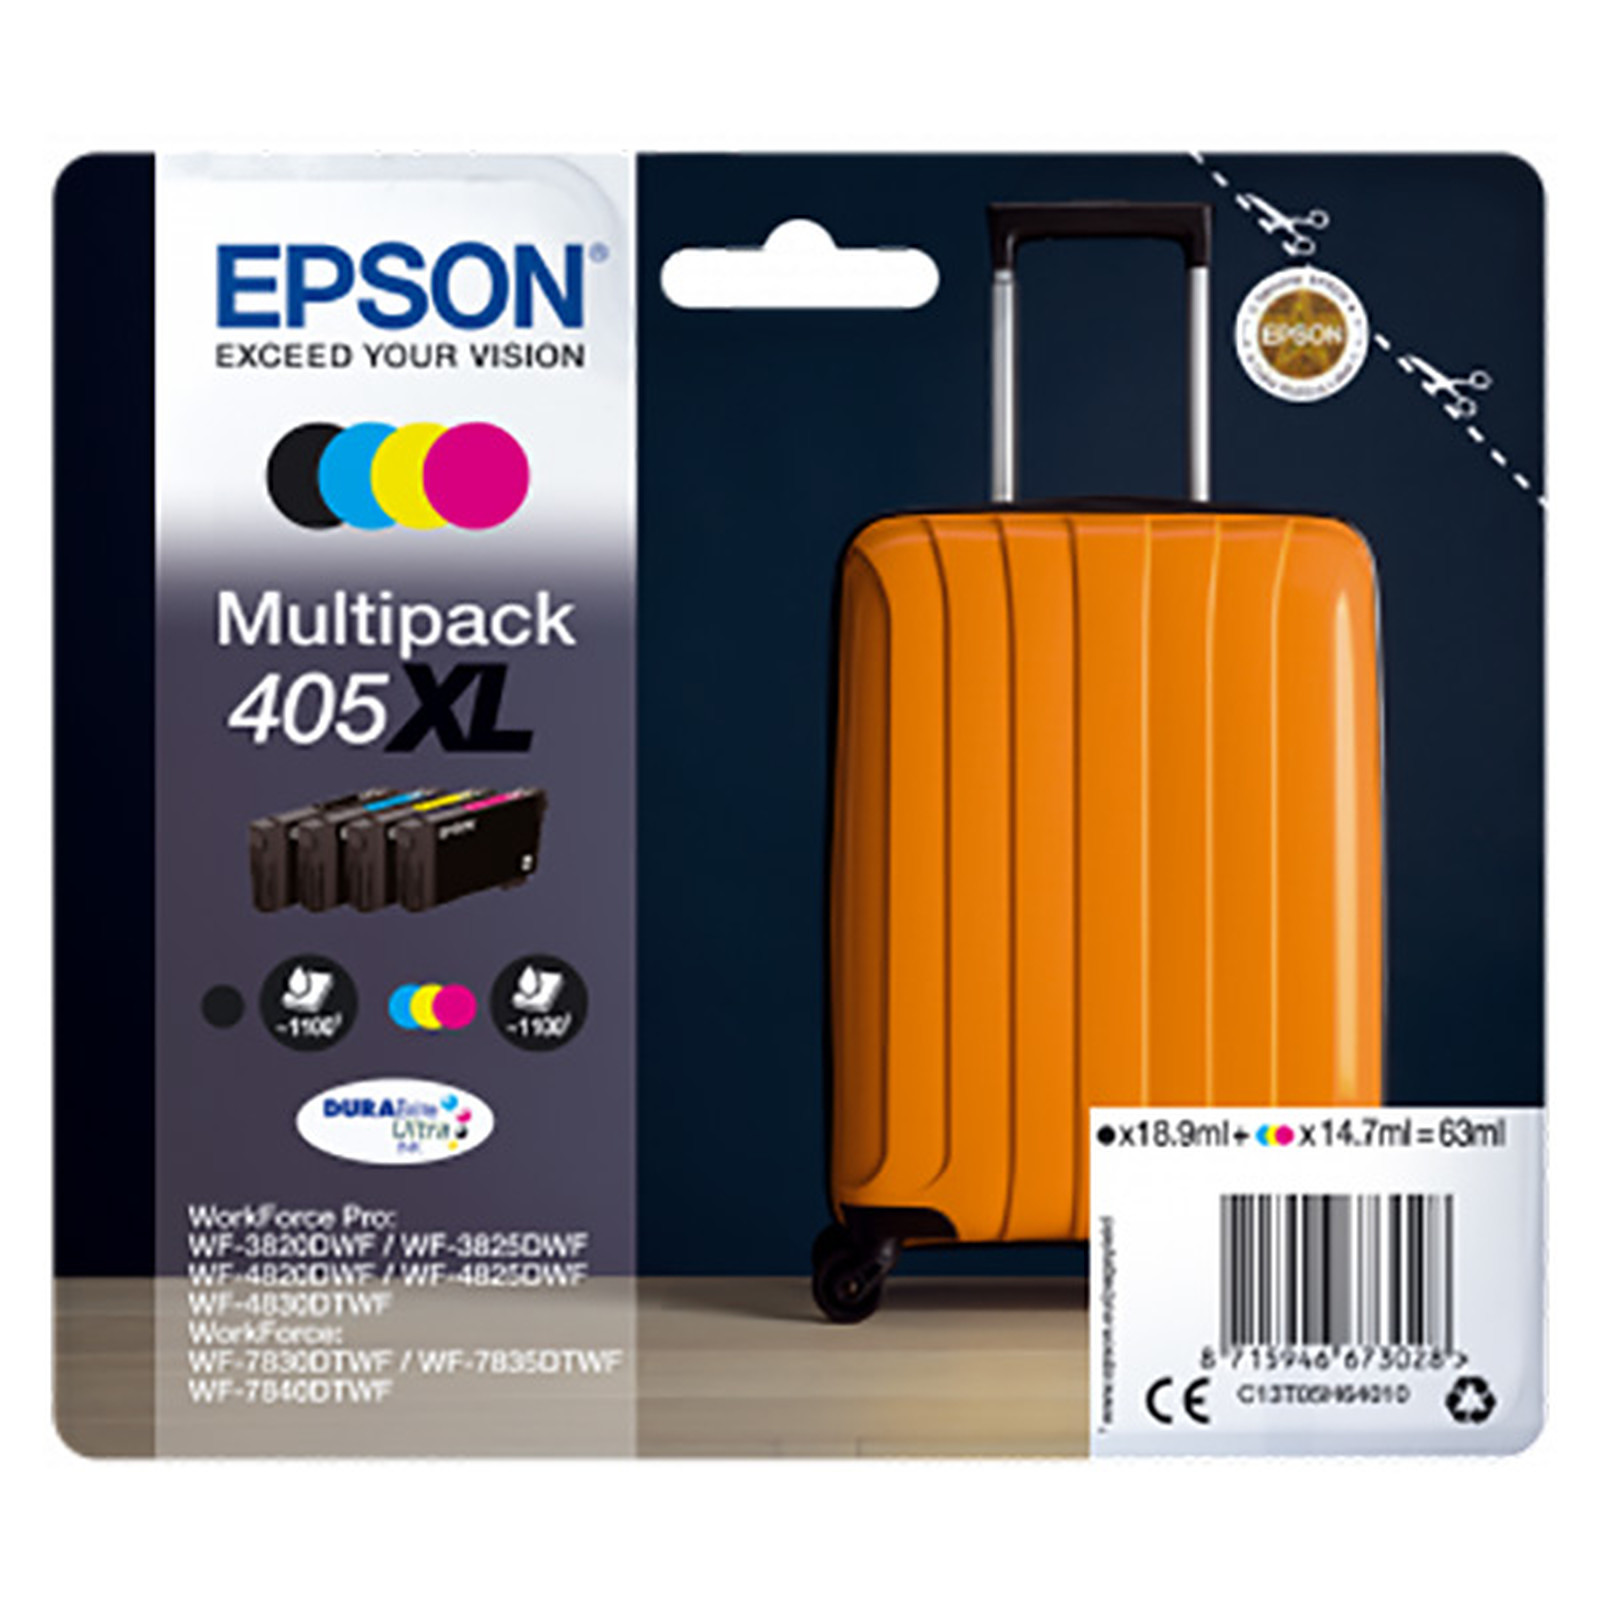 Epson Valise 405XL 4 couleurs - Cartouche imprimante Epson